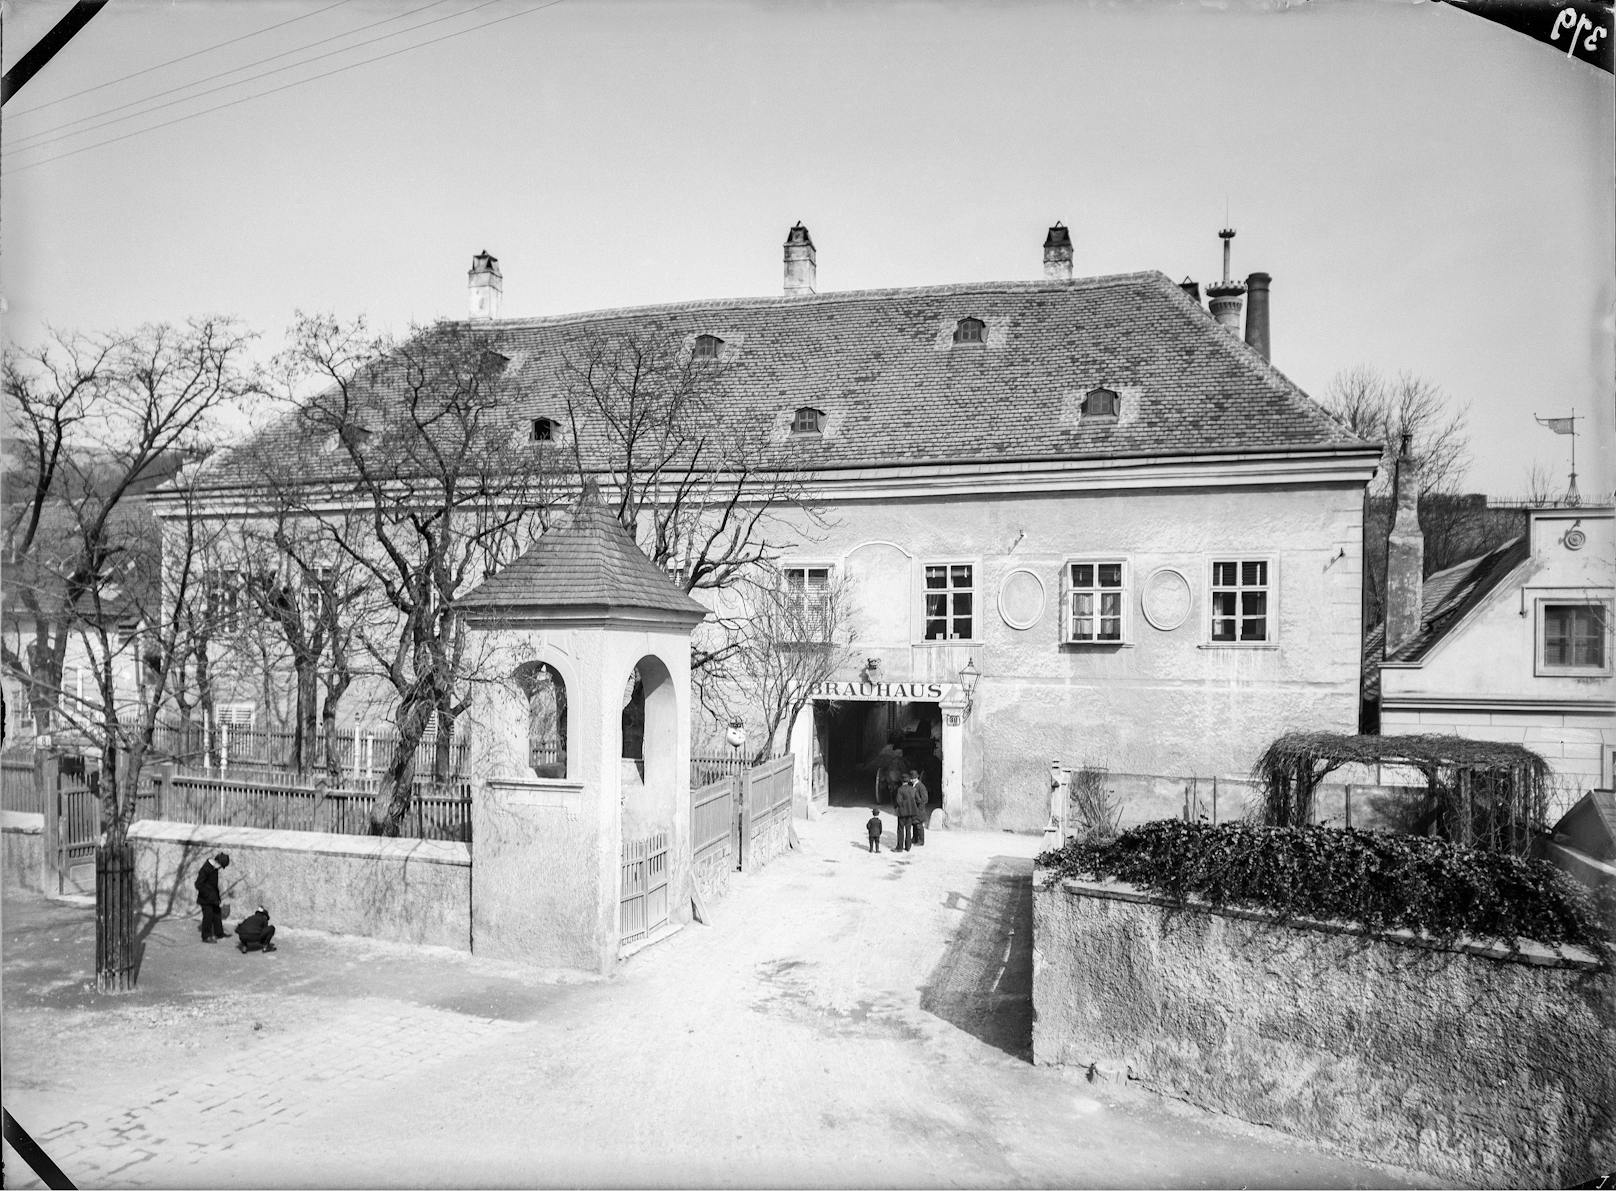 Das Gebäude des Trummelhofs besteht seit dem 14. Jahrhundert als Wirtschaftshof in der Cobenzlgasse 30. Um 1903 wurde daraus das Brauhaus "Zum Heiligen Leopold".